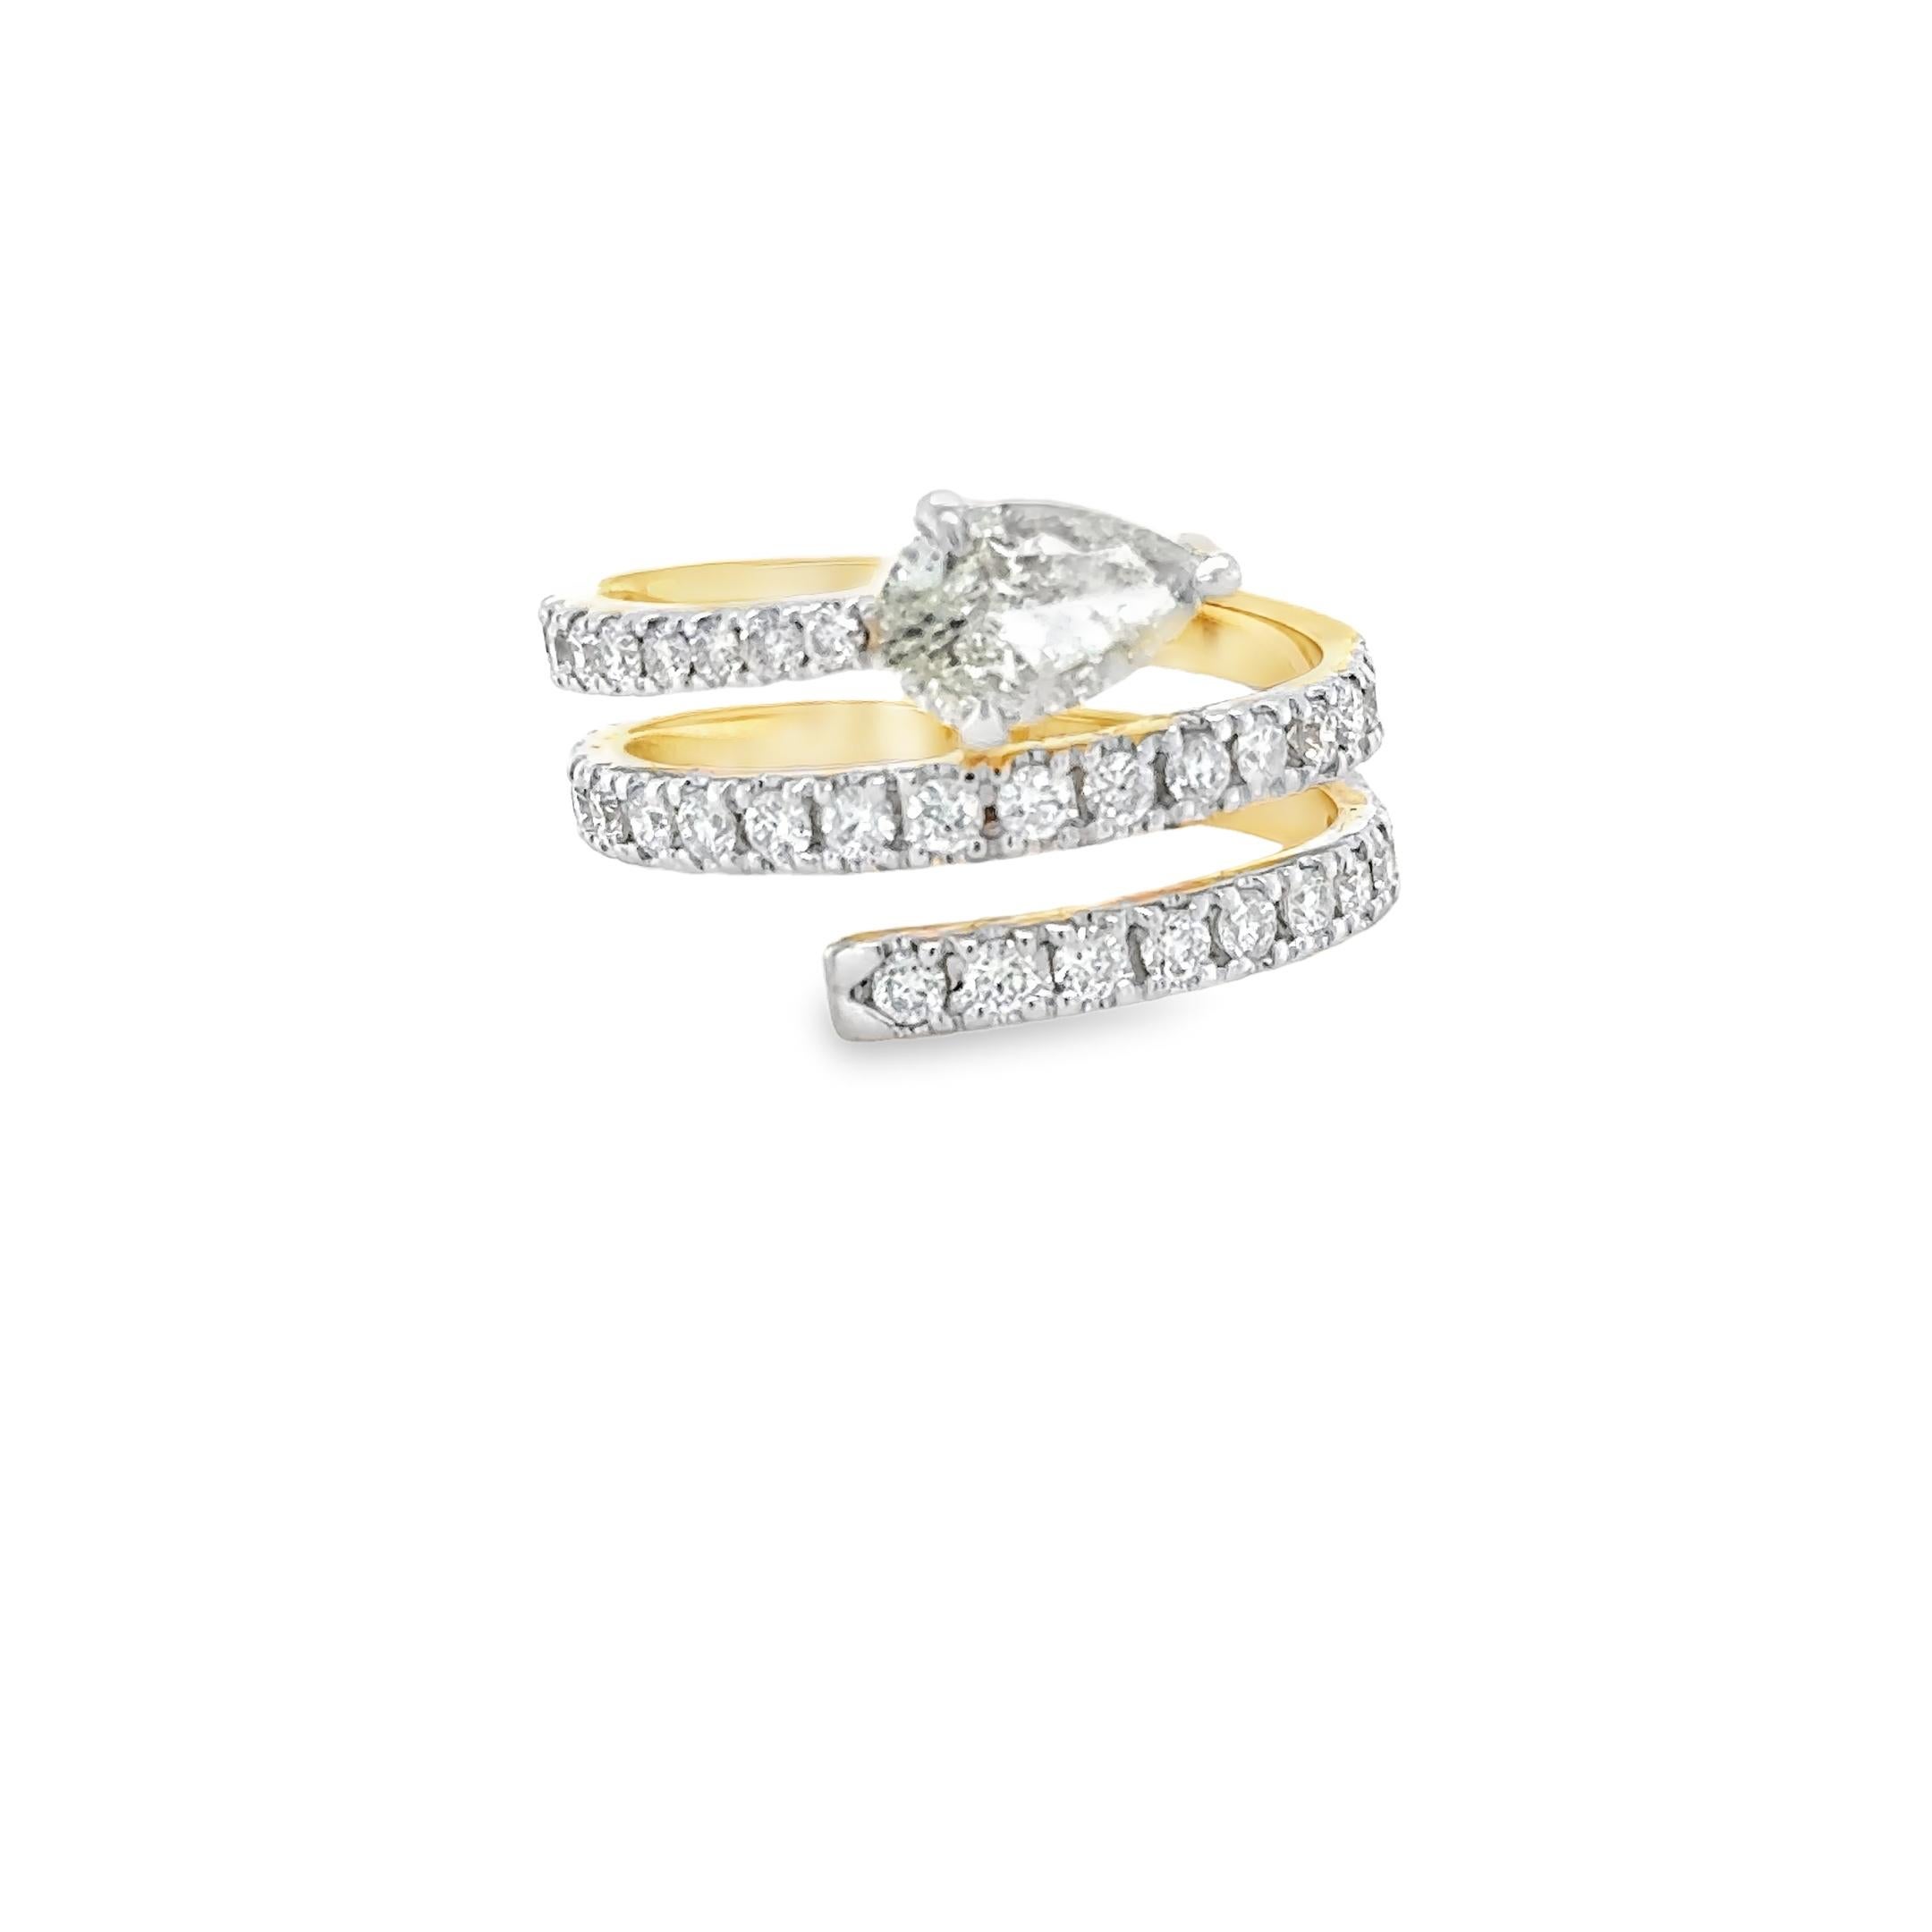 Diese exquisite 1,13 Karat Birne Form Diamant Spirale Cocktail-Ring verfügt über 18K Weiß & Gelbgold Birne-förmigen Diamanten und ist mit einem Birne geschliffenen natürlichen Diamanten und siebenunddreißig Runde Brillantschliff natürlichen